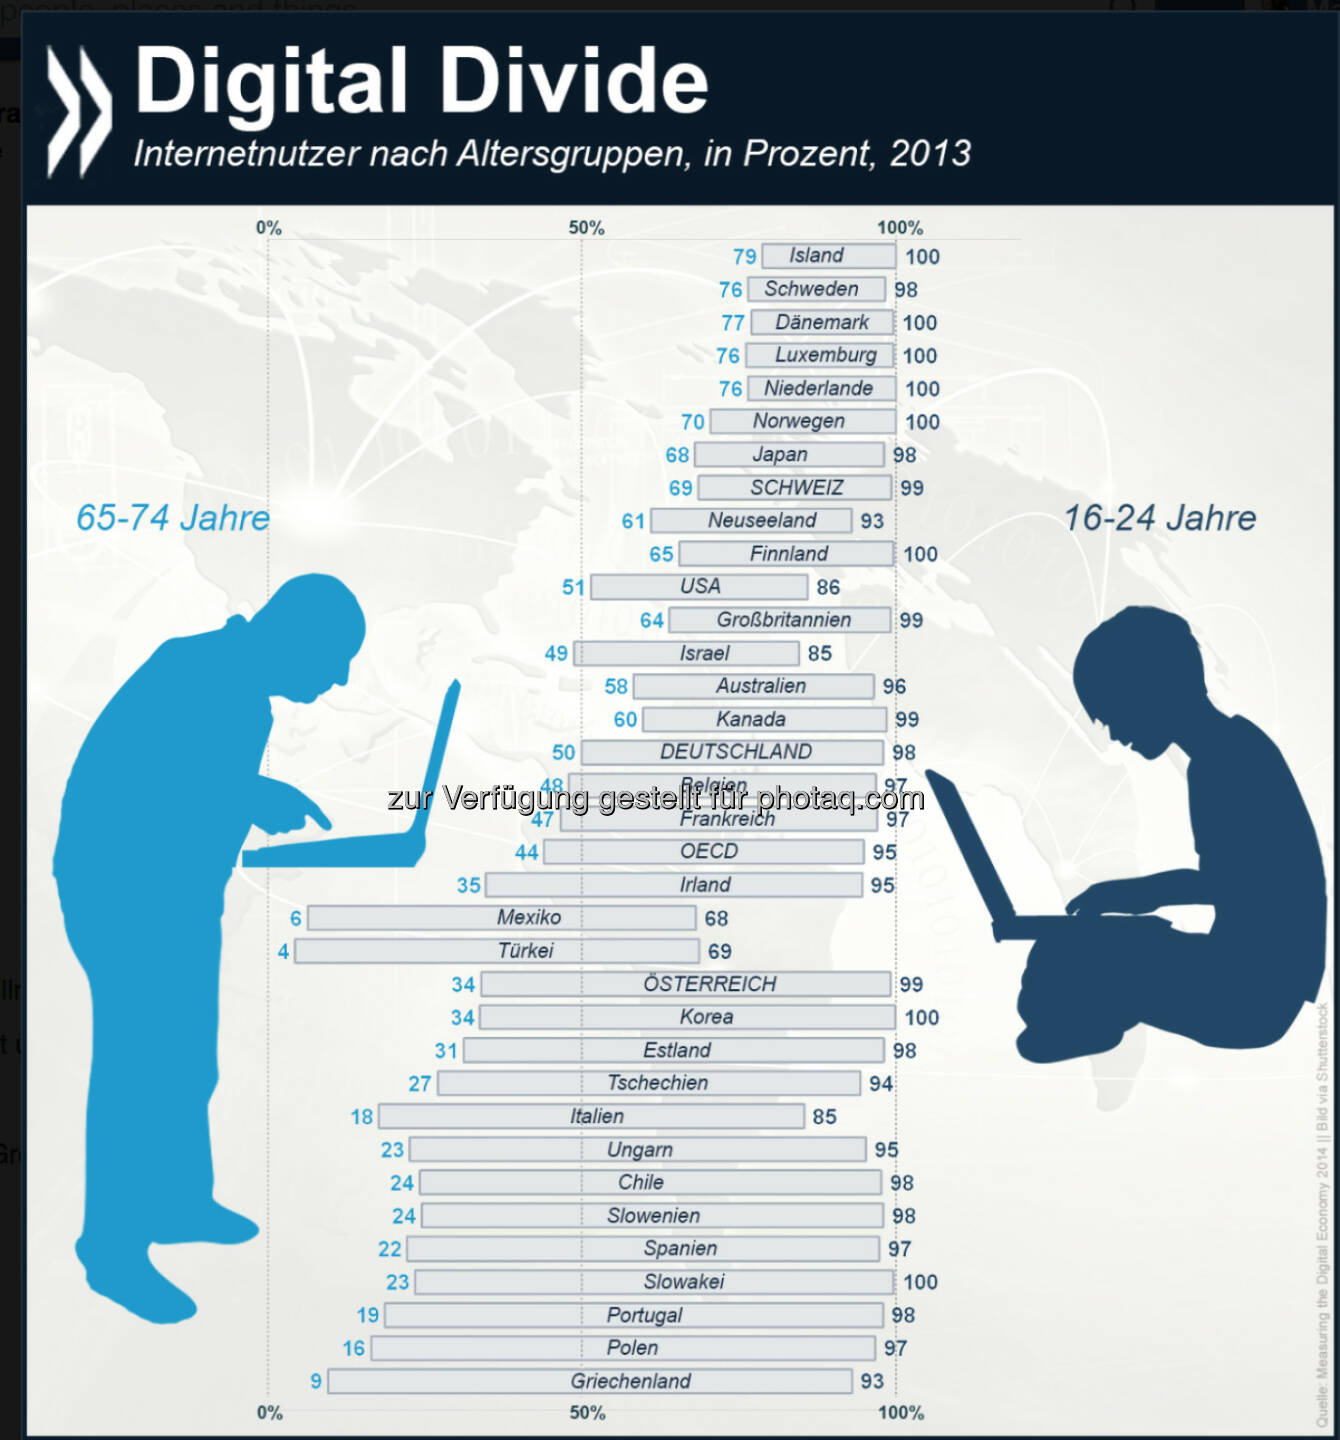 Worlds apart: Das Internet nutzen im OECD-Schnitt 95 Prozent der 16- bis 24-Jährigen. Bei ihren Großeltern (65-74 Jahre) ist der Anteil mit 44 Prozent nicht mal halb so hoch. Die größten Lücken zwischen den Generationen klaffen in Griechenland, Polen und Portugal.
Mehr Infos zum Thema unter: http://bit.ly/1zvECTP